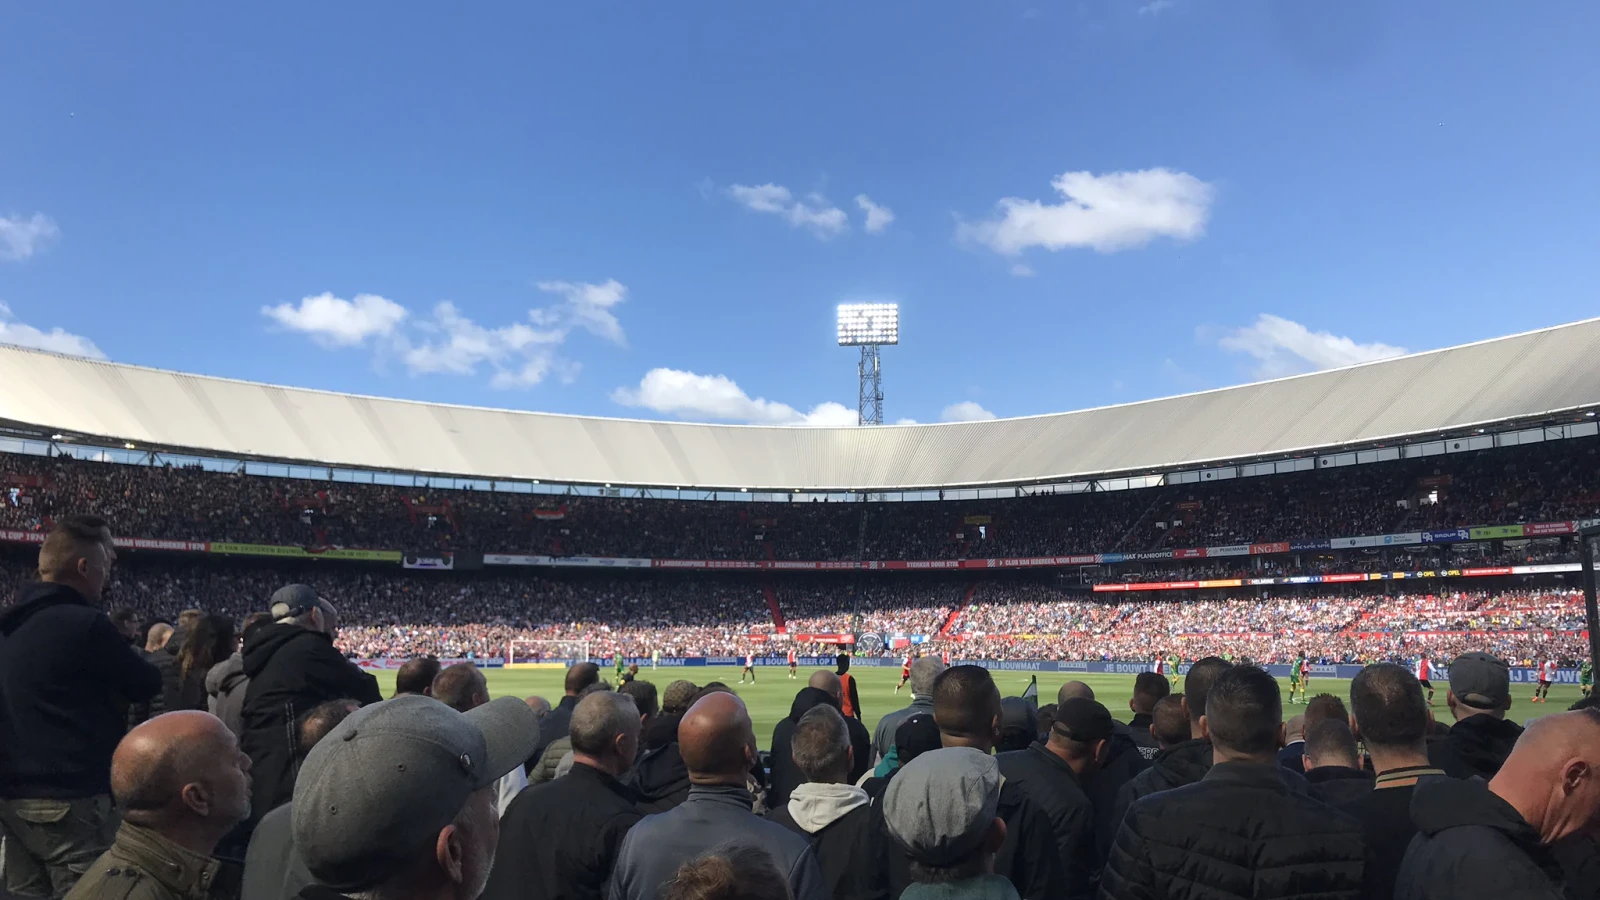 Feyenoord oefent op 30 juli in De Kuip tegen SL Benfica